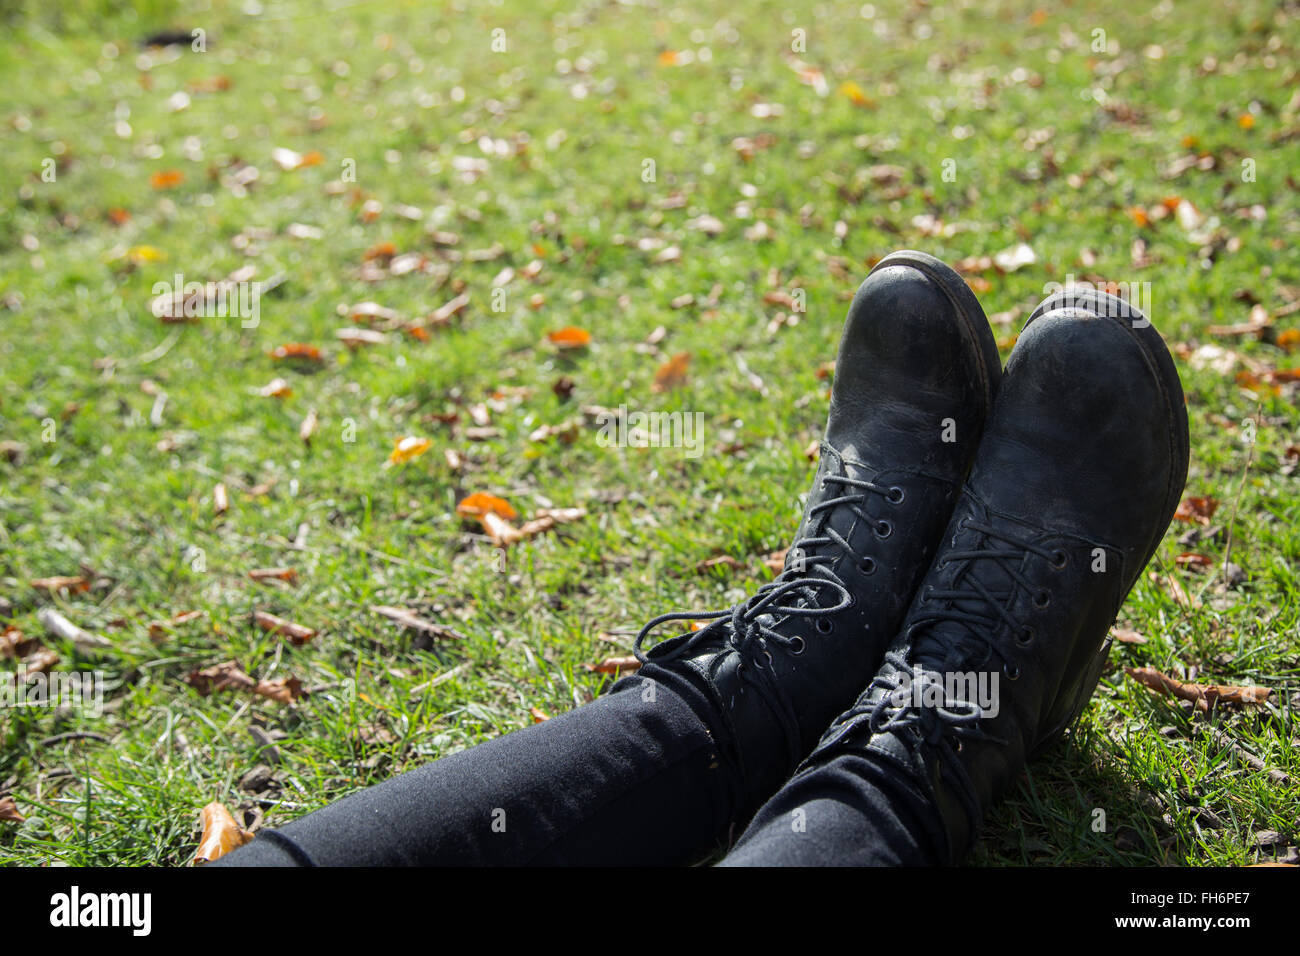 Una fotografía de una niña botas y pantalones negros en la hierba. Foto de stock